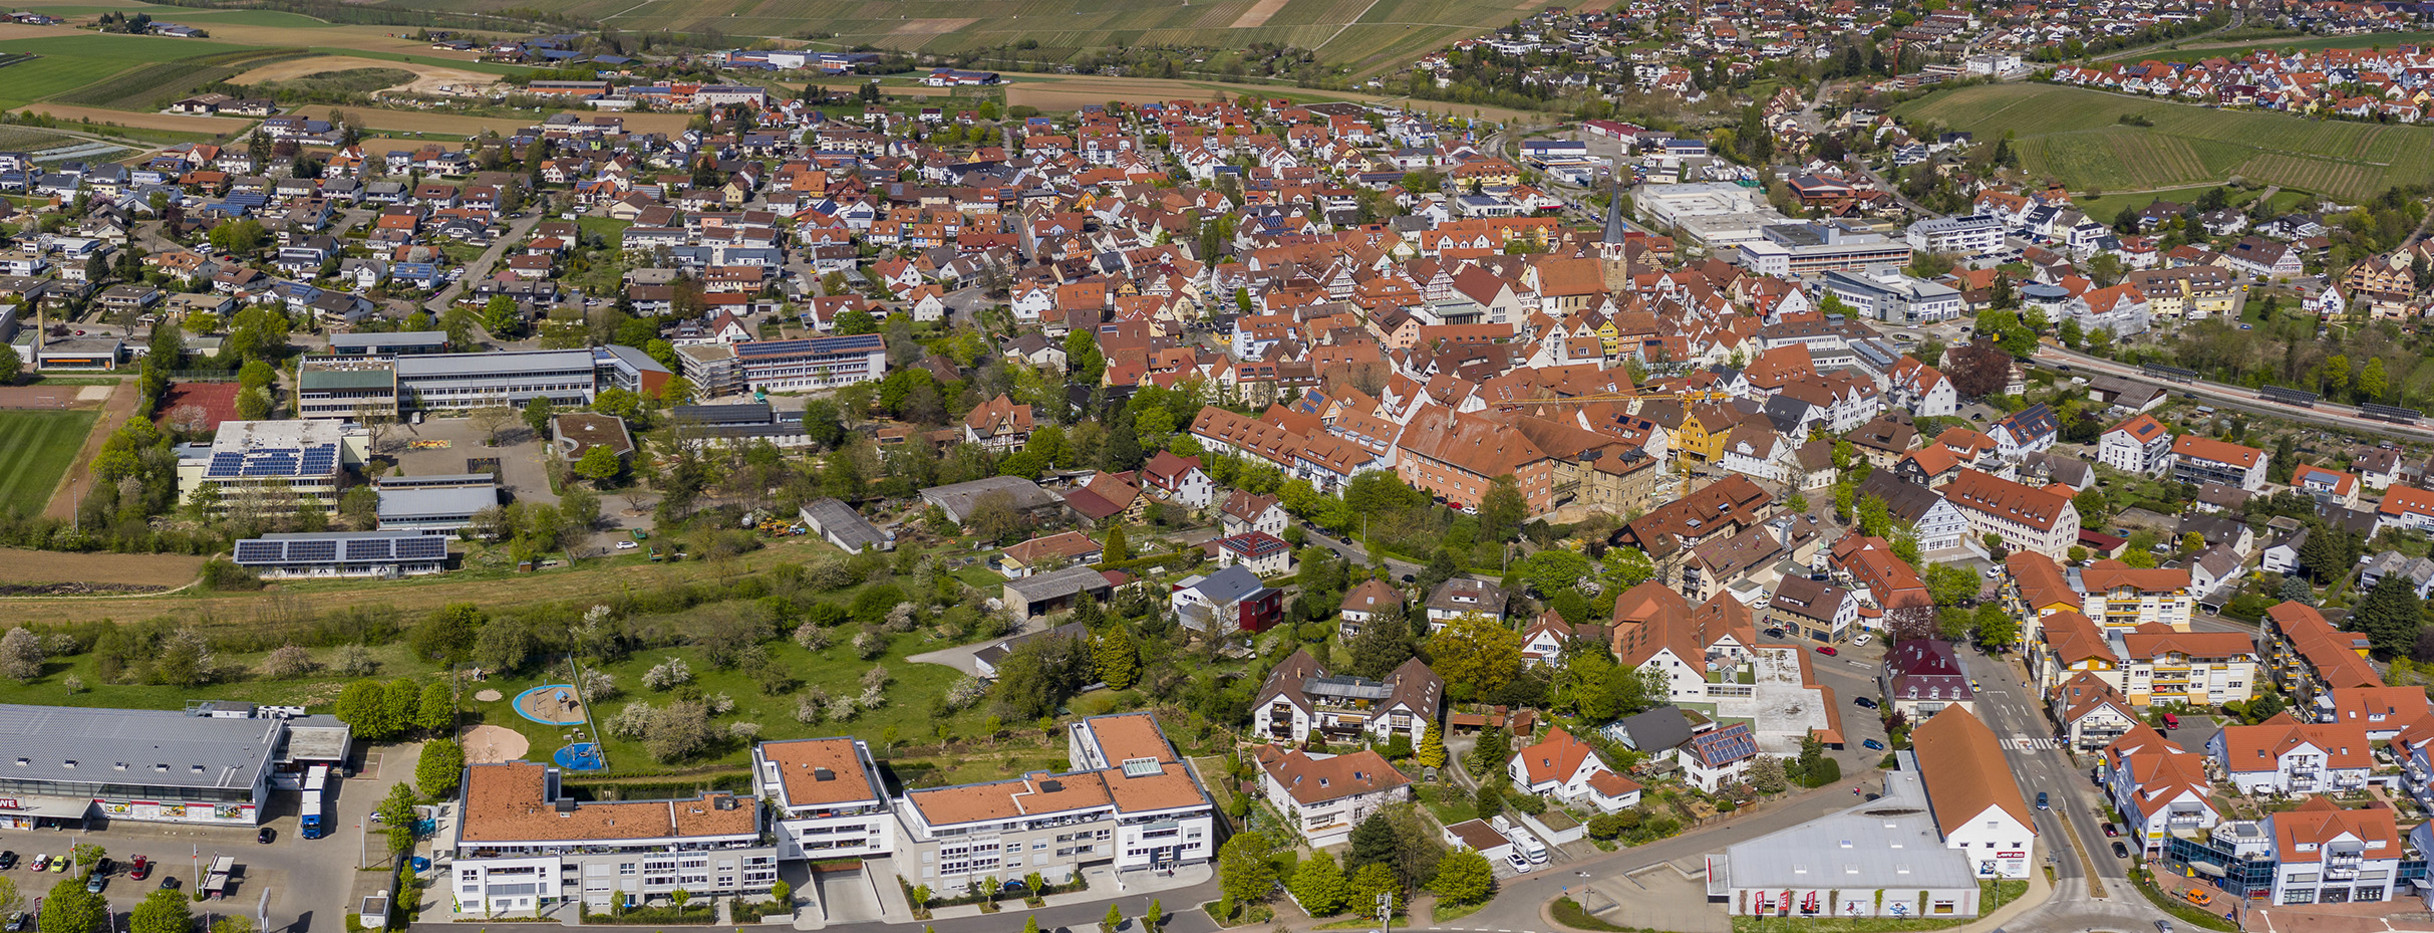 Lufbildaufnahme der Stadt Brackenheim im Frühjahr